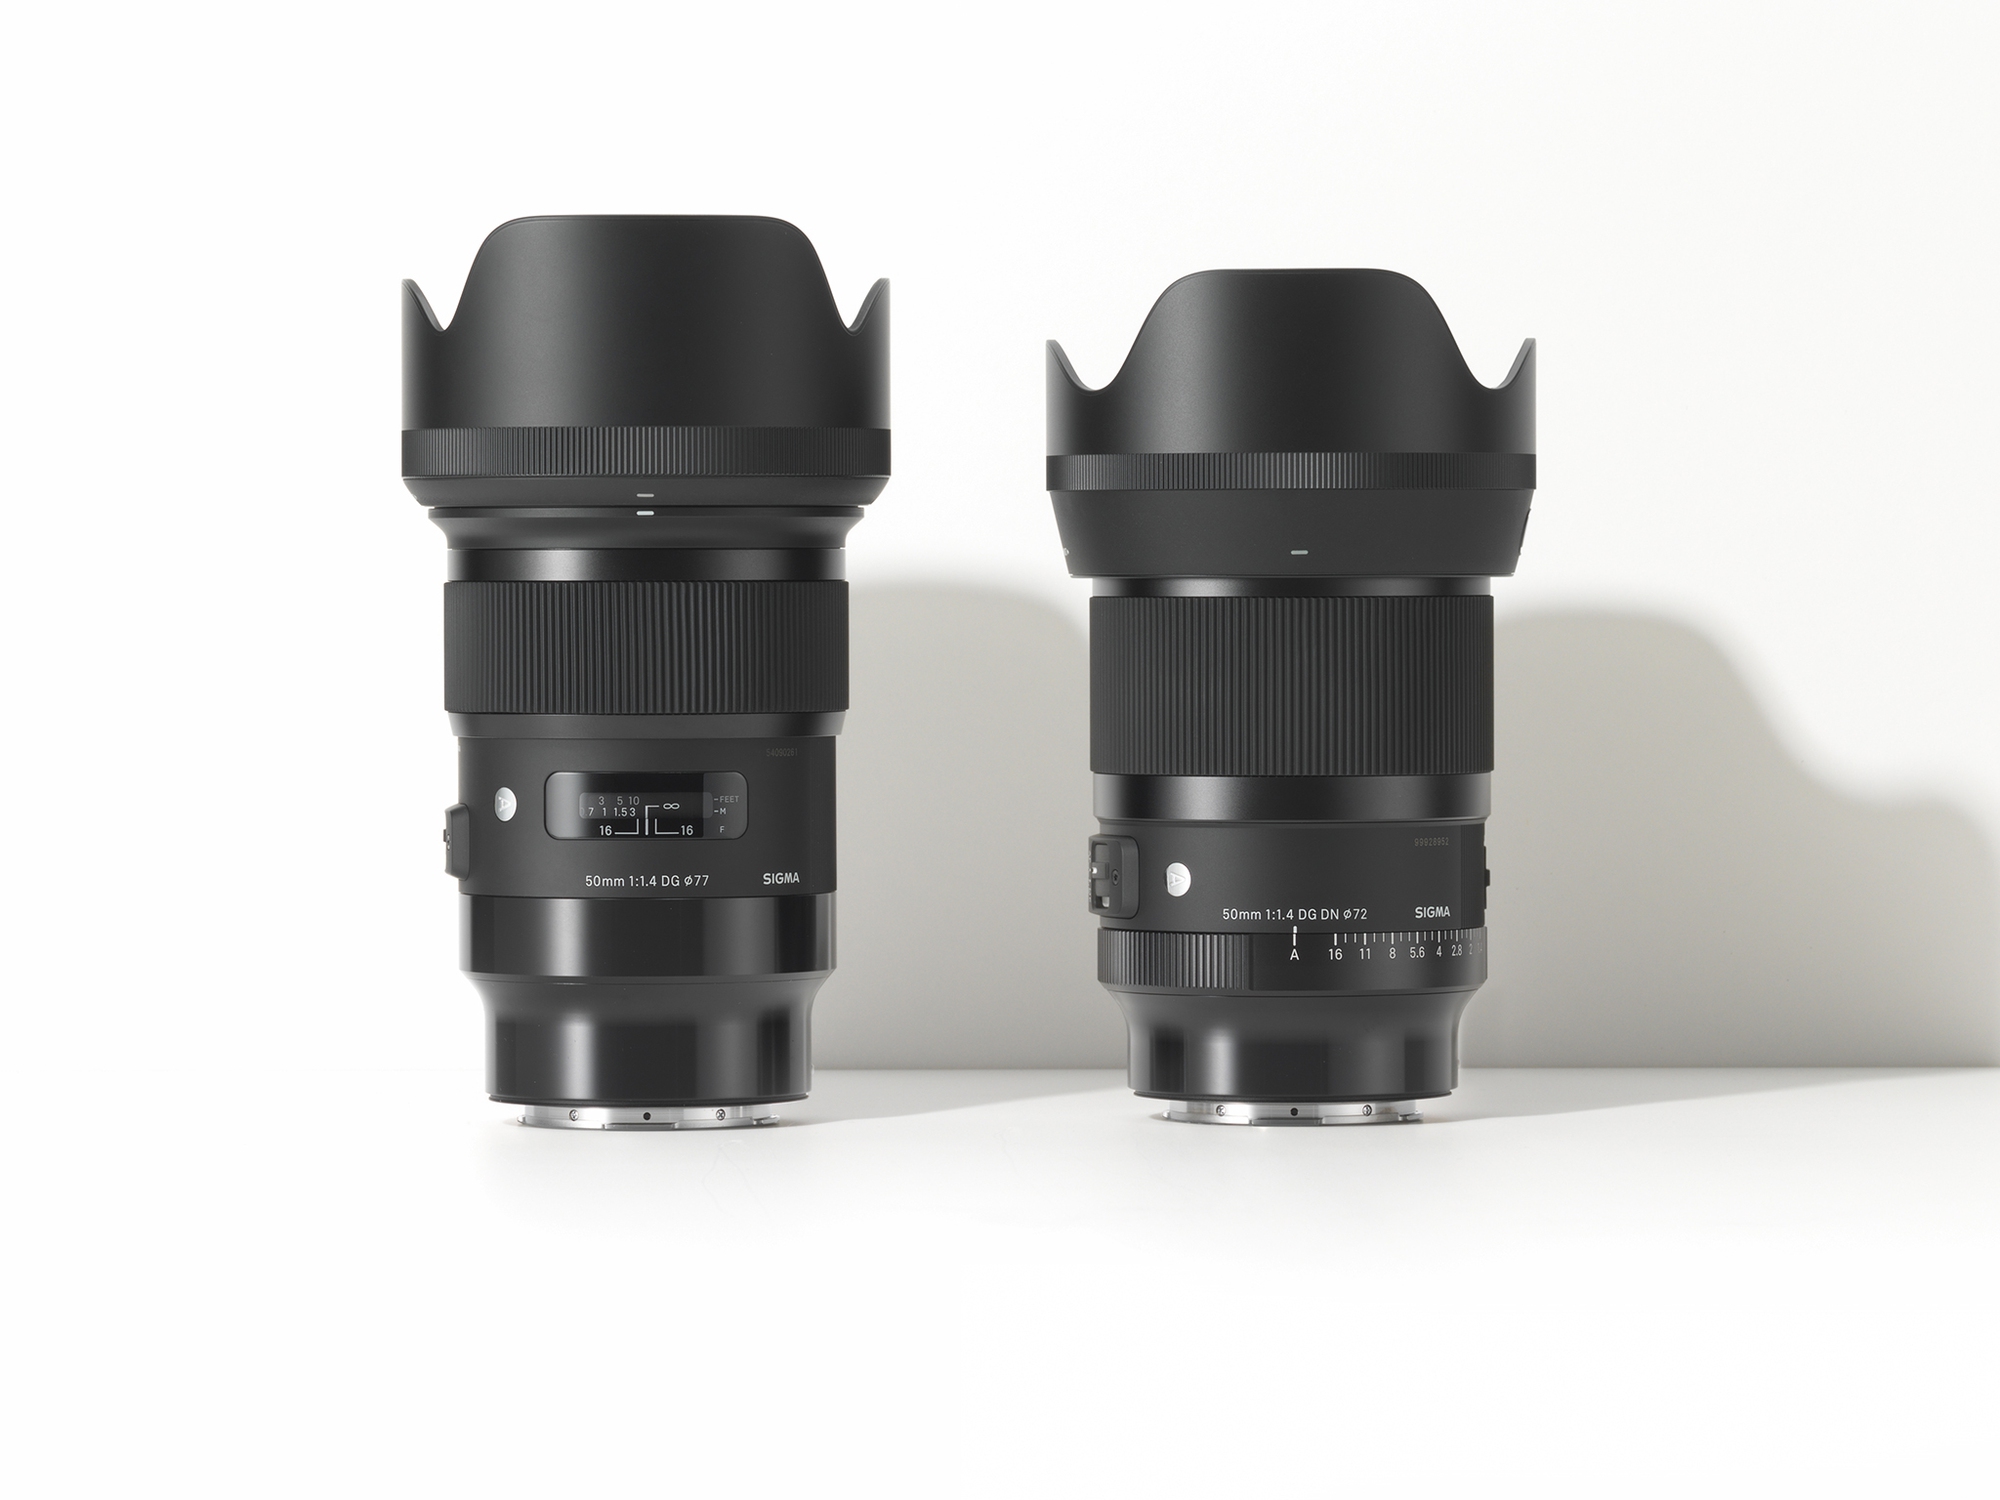 Sigma ra mắt ống kính 50mm F/1.4 Art mới: Gọn nhẹ hơn, lấy nét nhanh hơn, cải thiện chất lượng quang học, giá 20,5 triệu đồng - Ảnh 2.